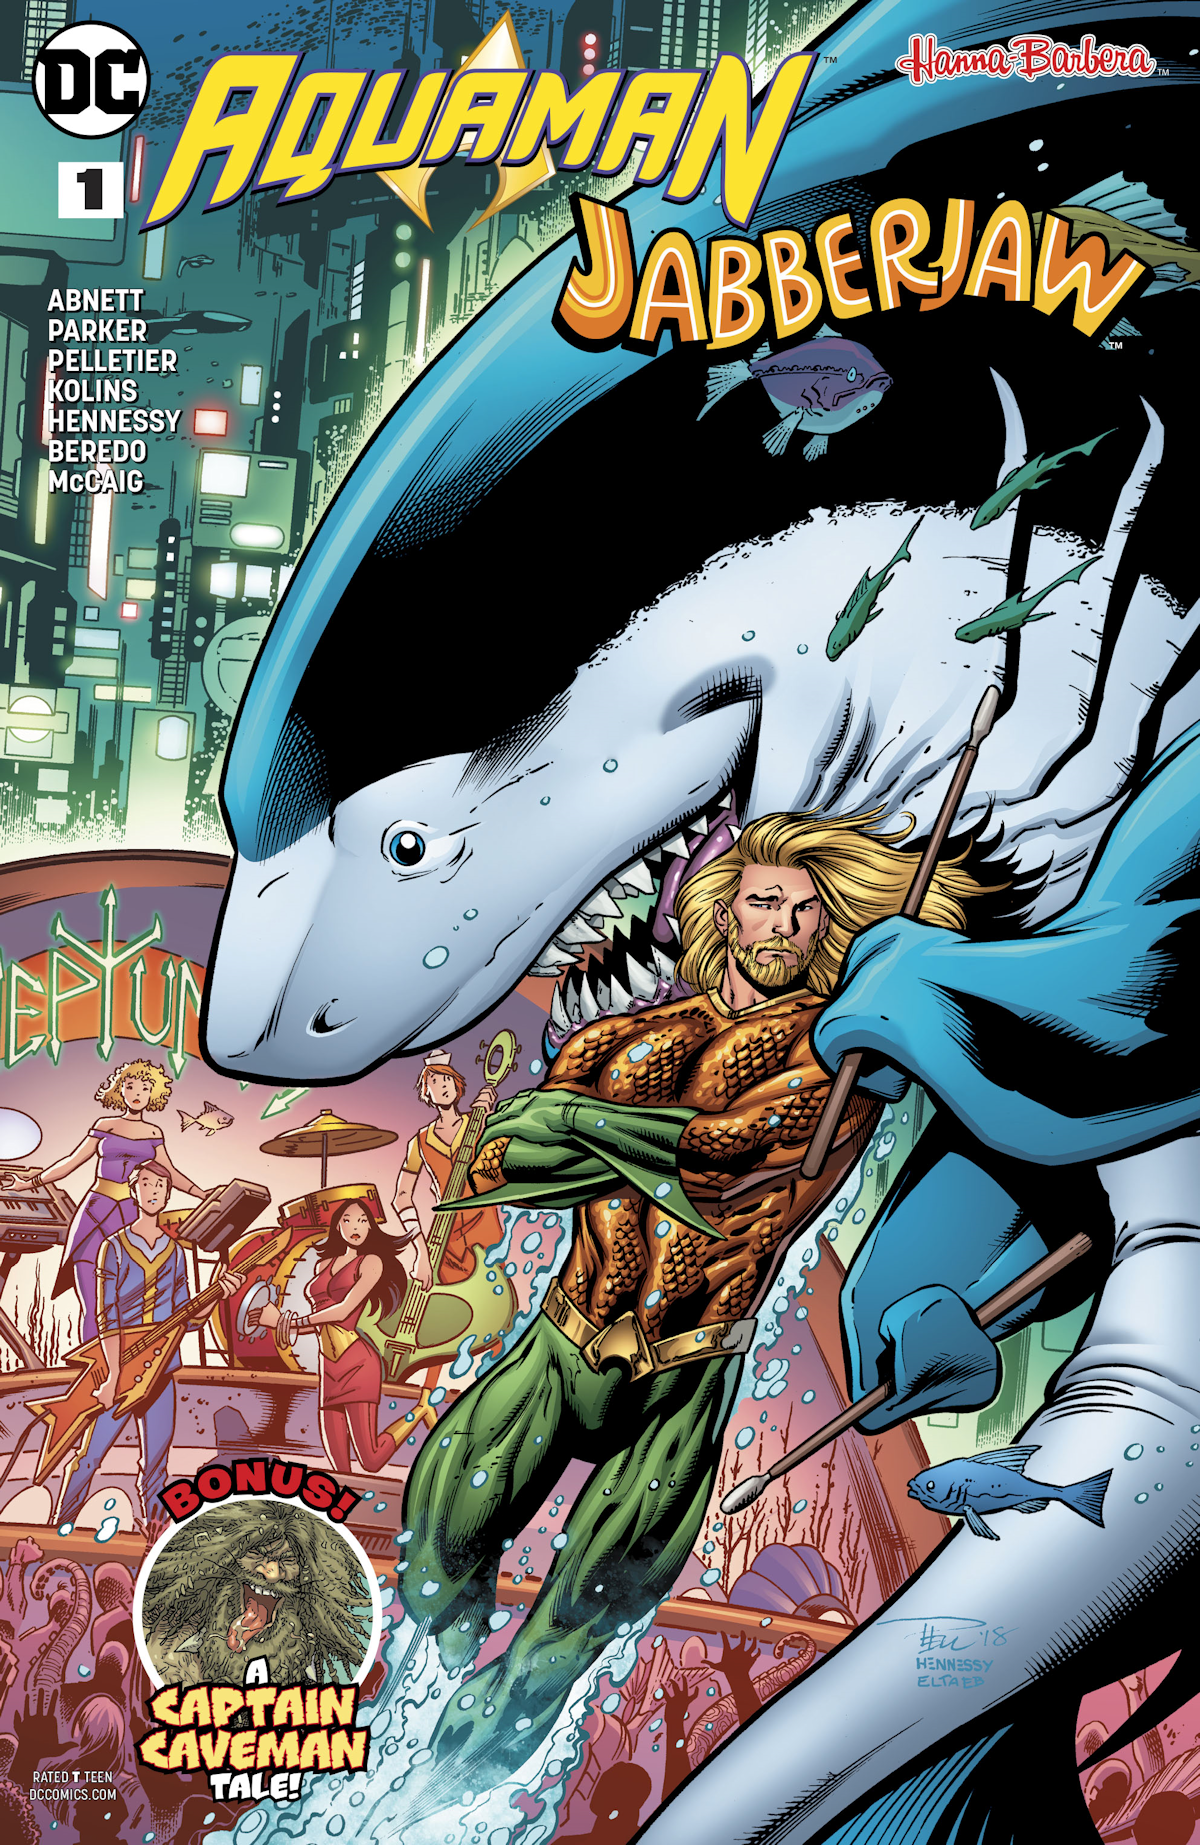 Aquaman/Jabberjaw Special 1 (Cover A)